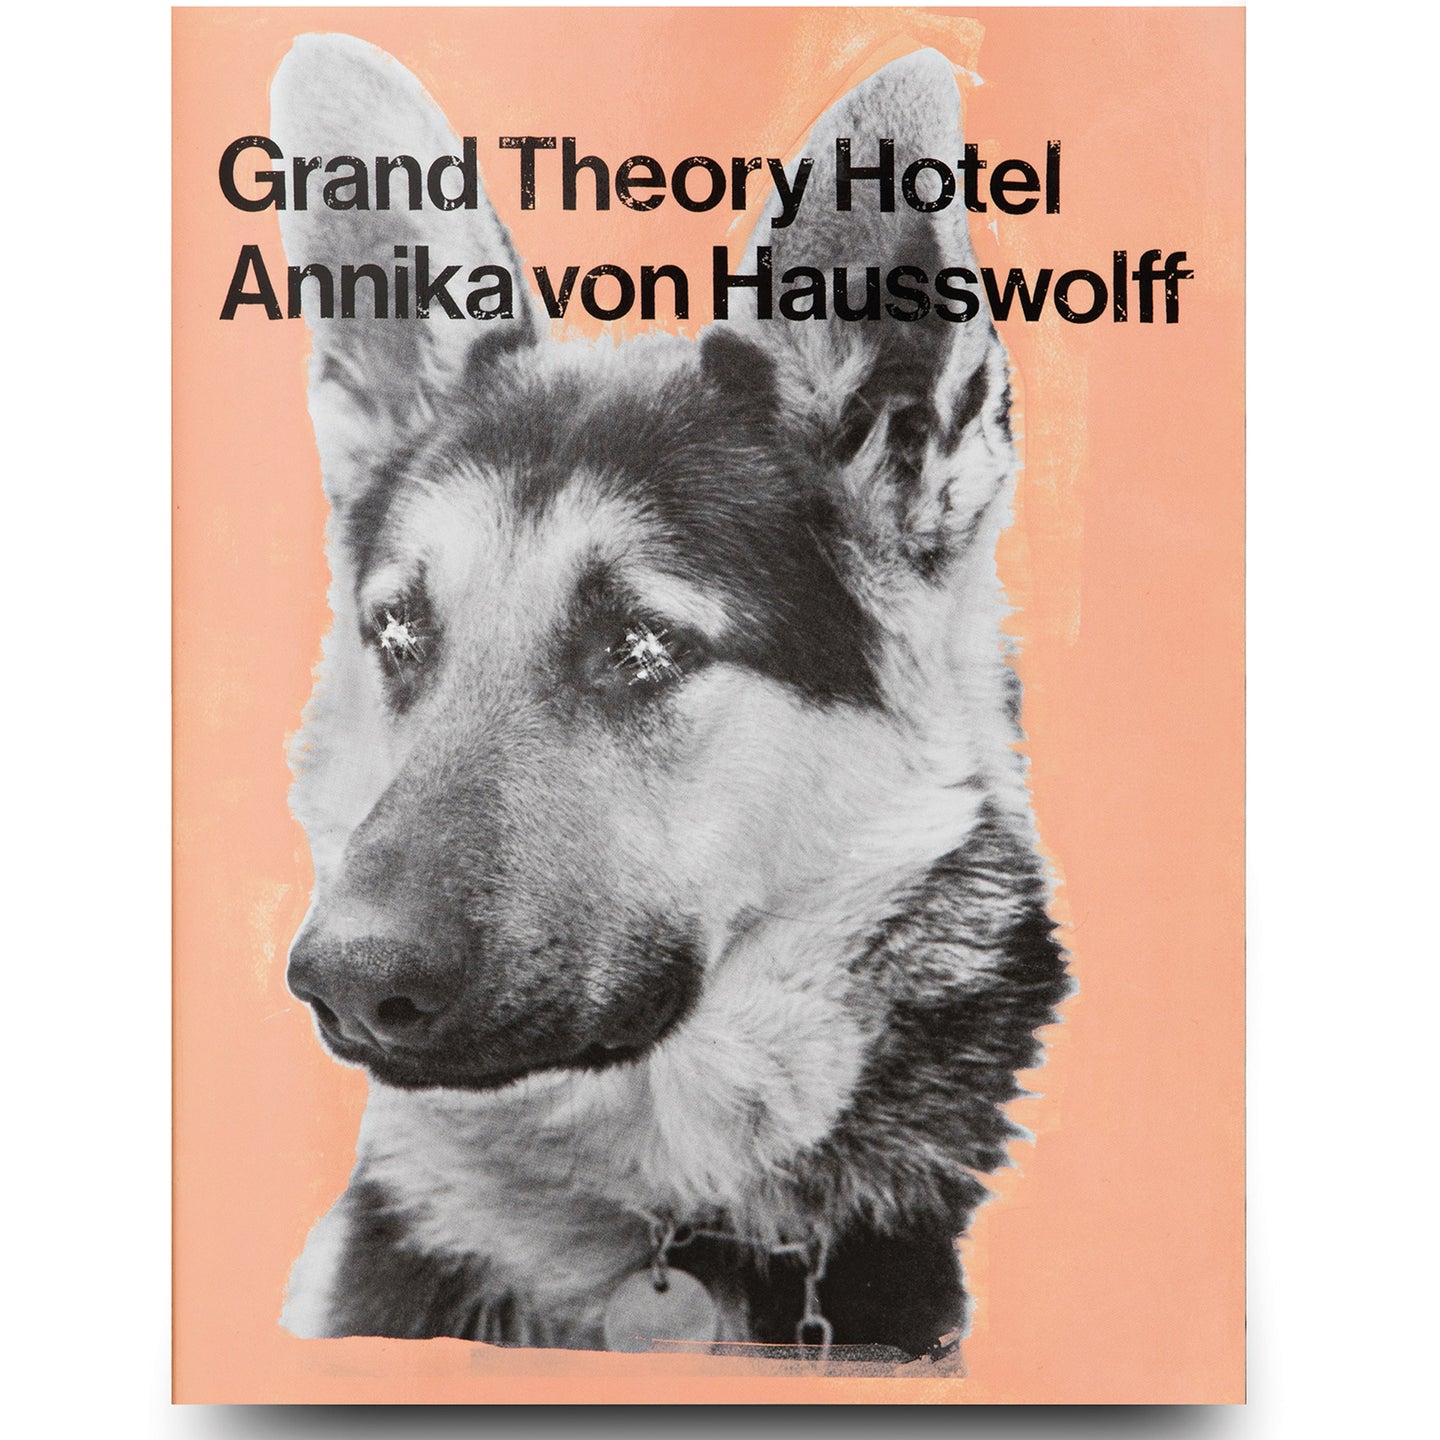 ANNIKA VON HAUSSWOLFF: GRAND THEORY HOTEL